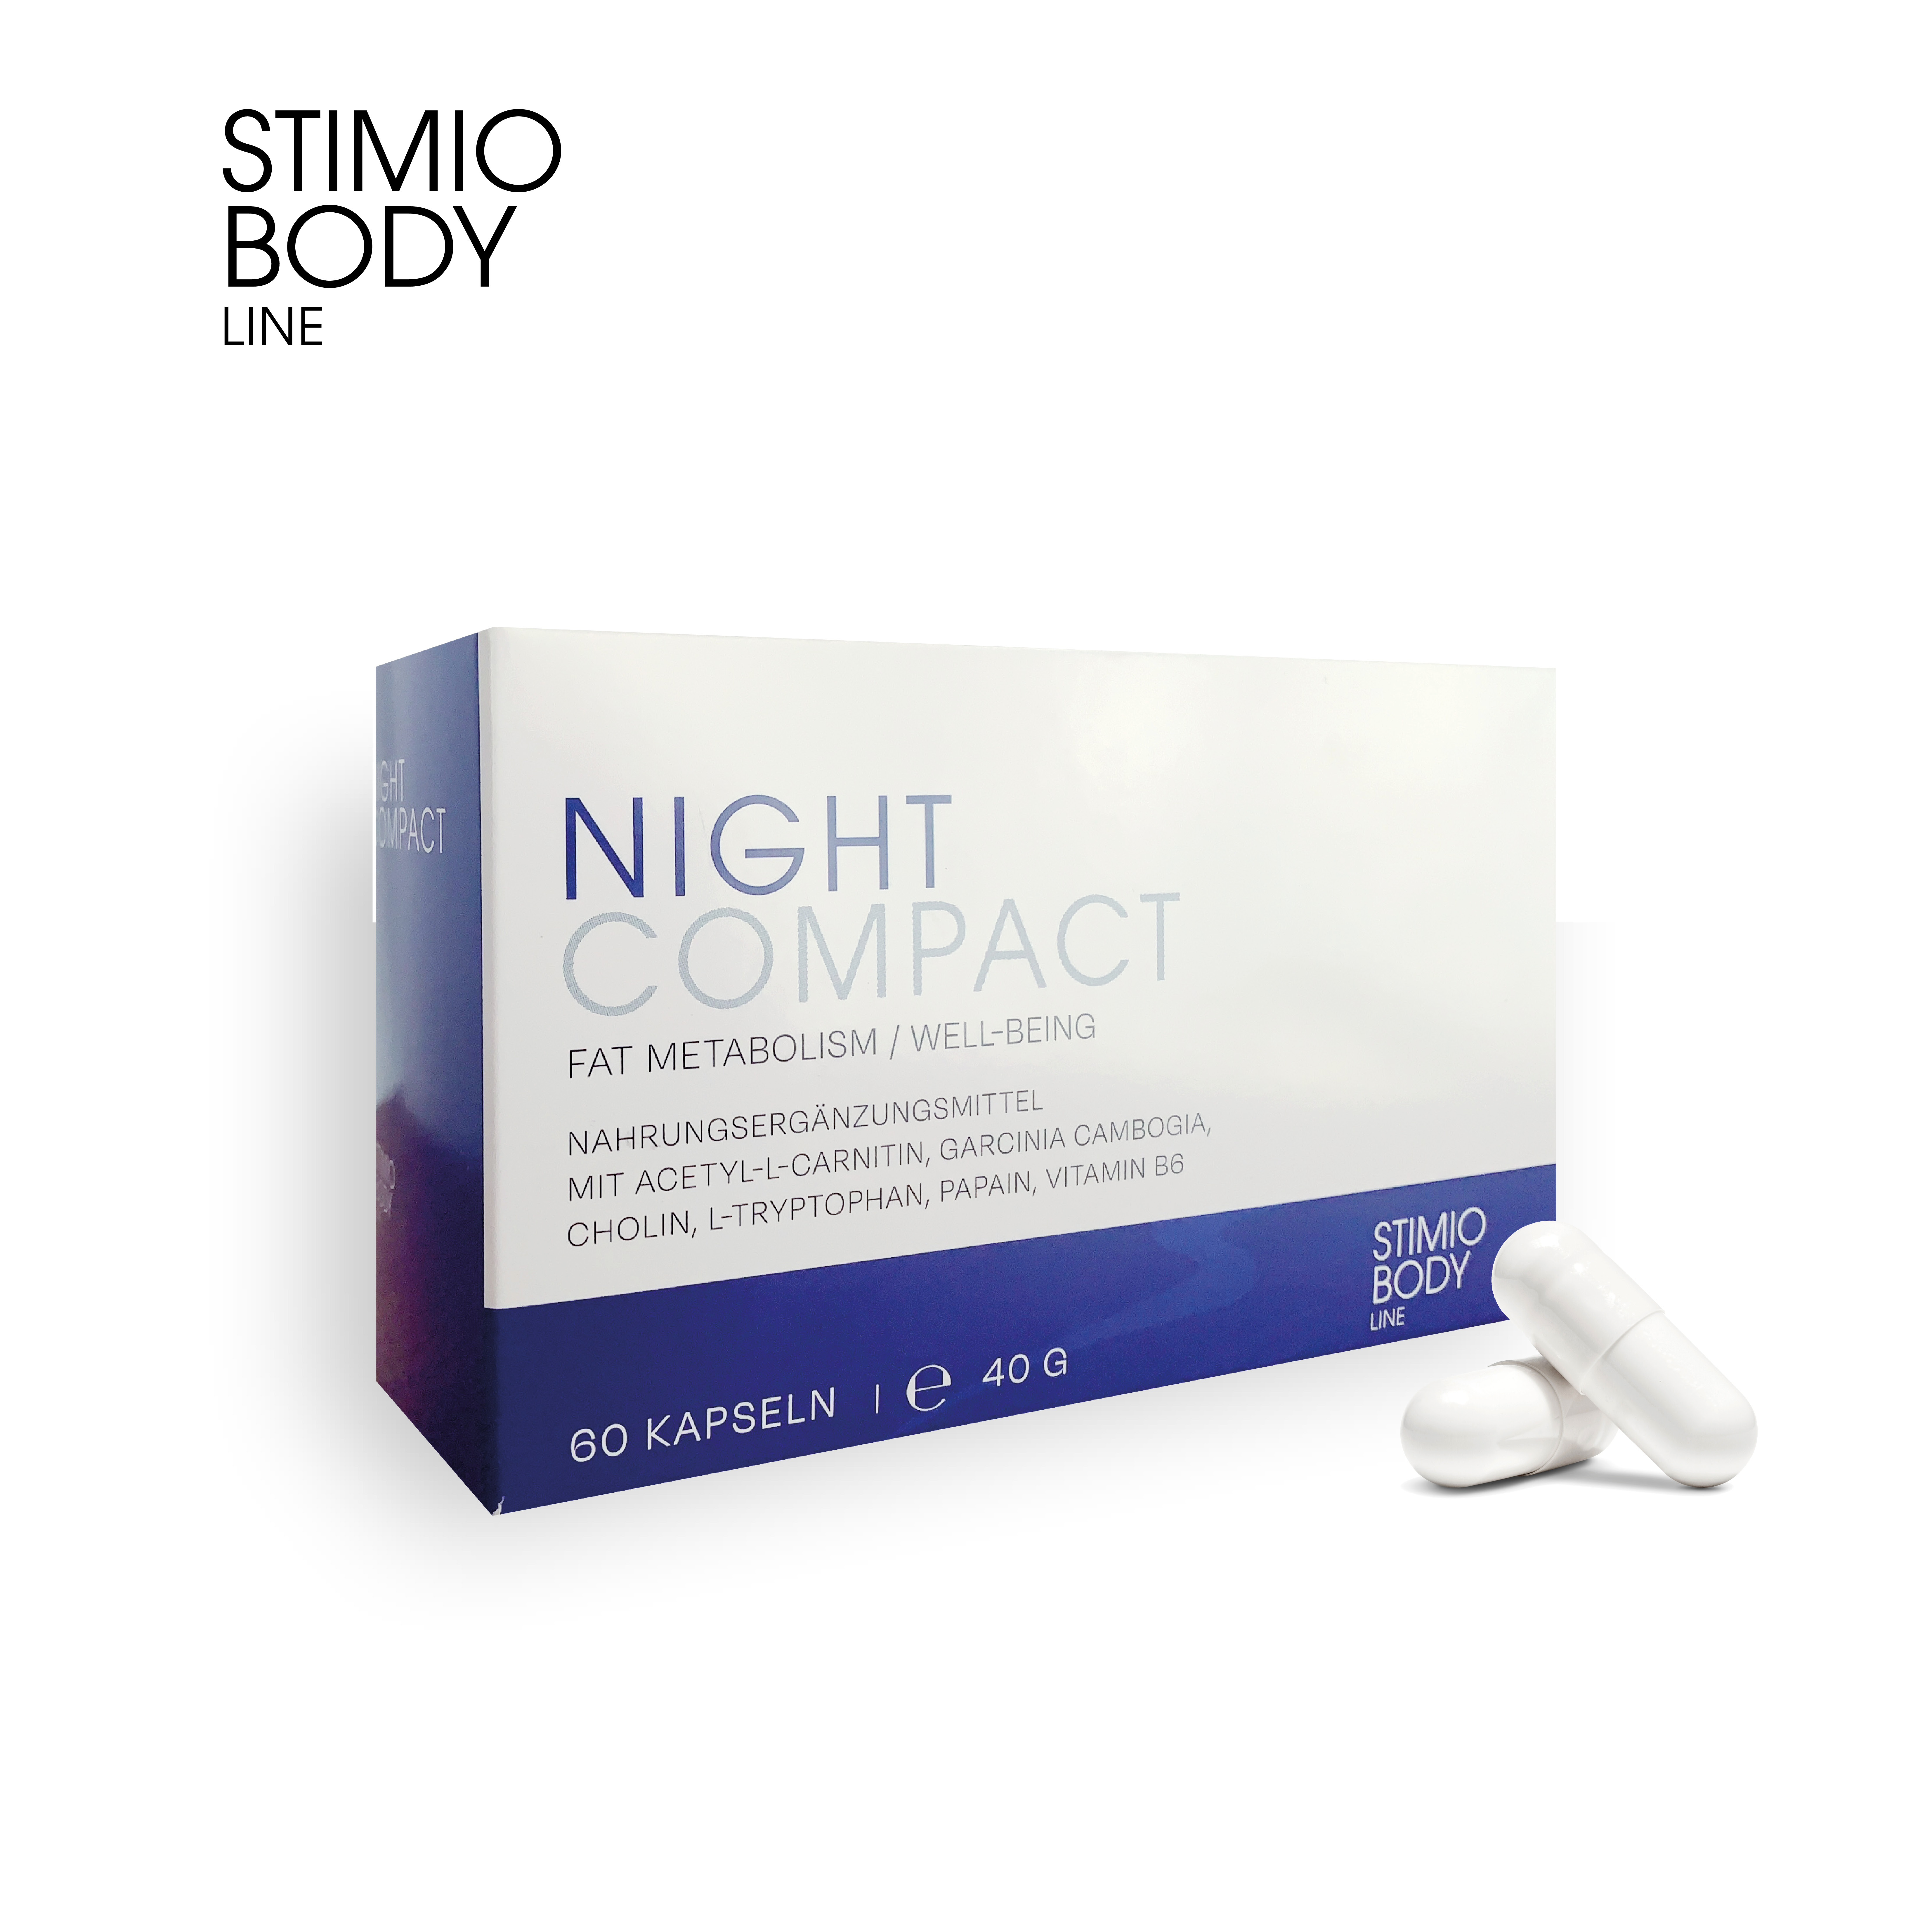 NIGHT COMPACT  -  Stoffwechsel-Booster für die Nacht